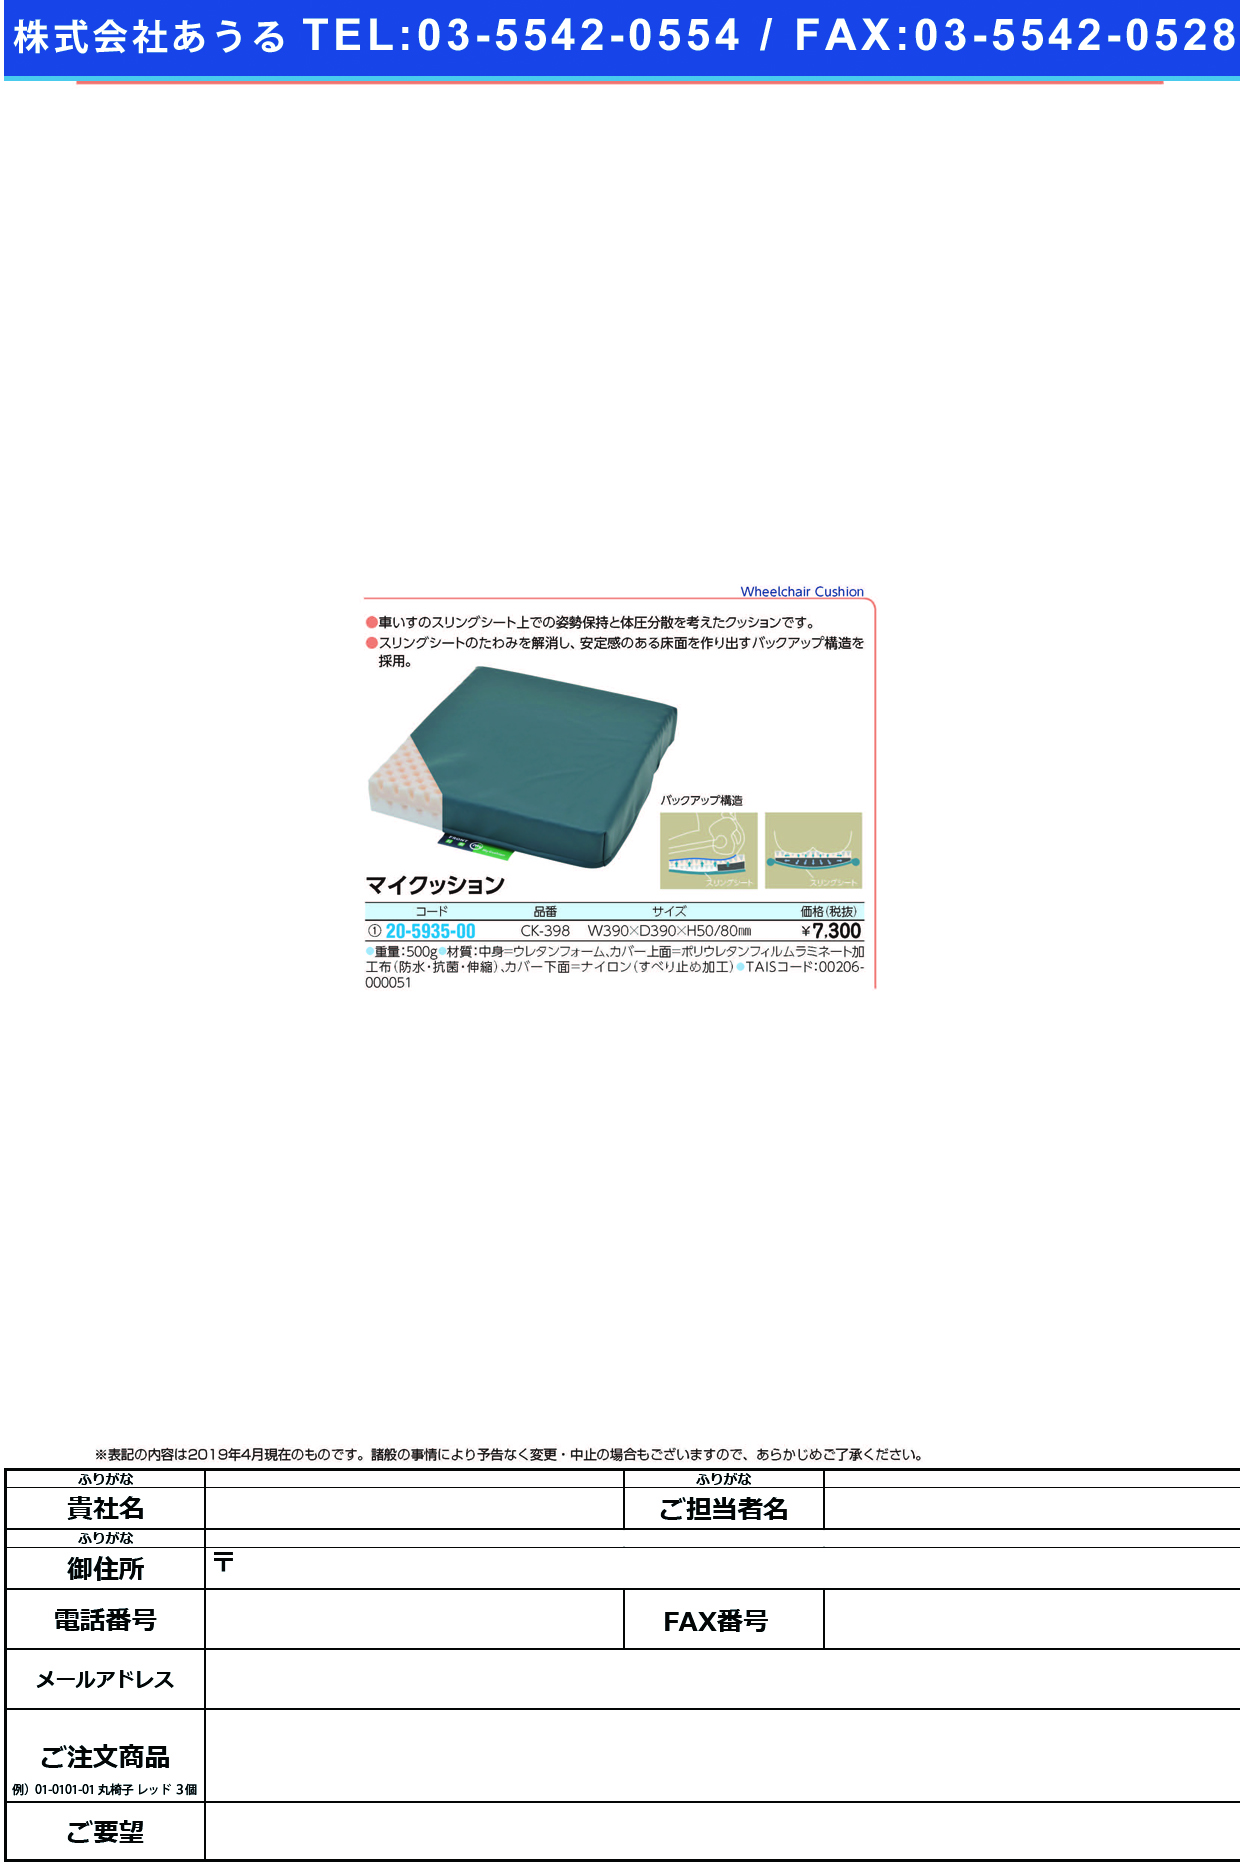 (20-5935-00)マイクッション CK-398(39X39X8/5CM) ﾏｲｸｯｼｮﾝ(ケープ)【1個単位】【2019年カタログ商品】